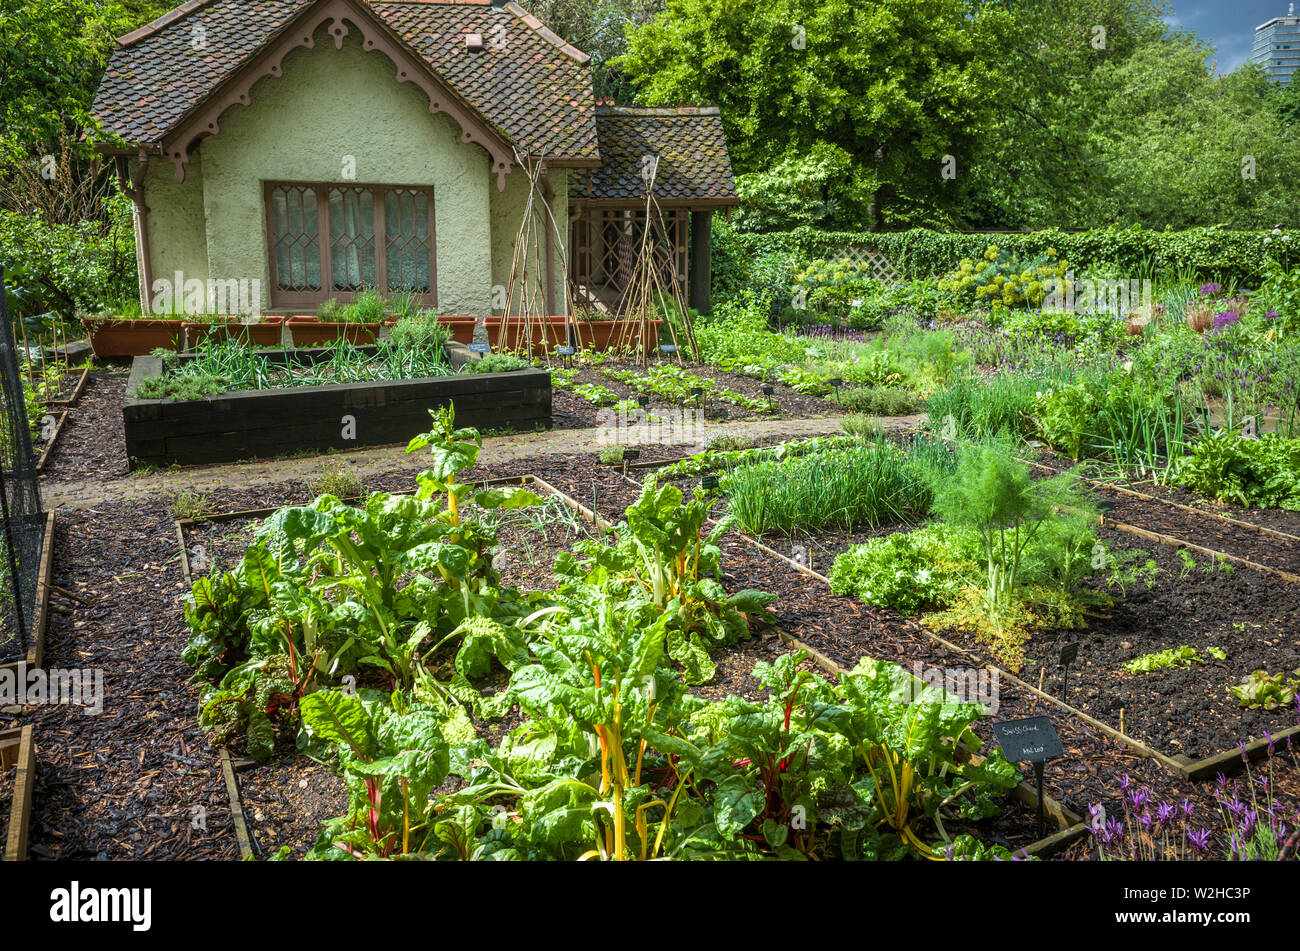 Londra, St Jame's Park, Regno Unito 9 Maggio 2019: isola d'anatra villino con giardino vegetale in St James Park, London, Regno Unito Foto Stock